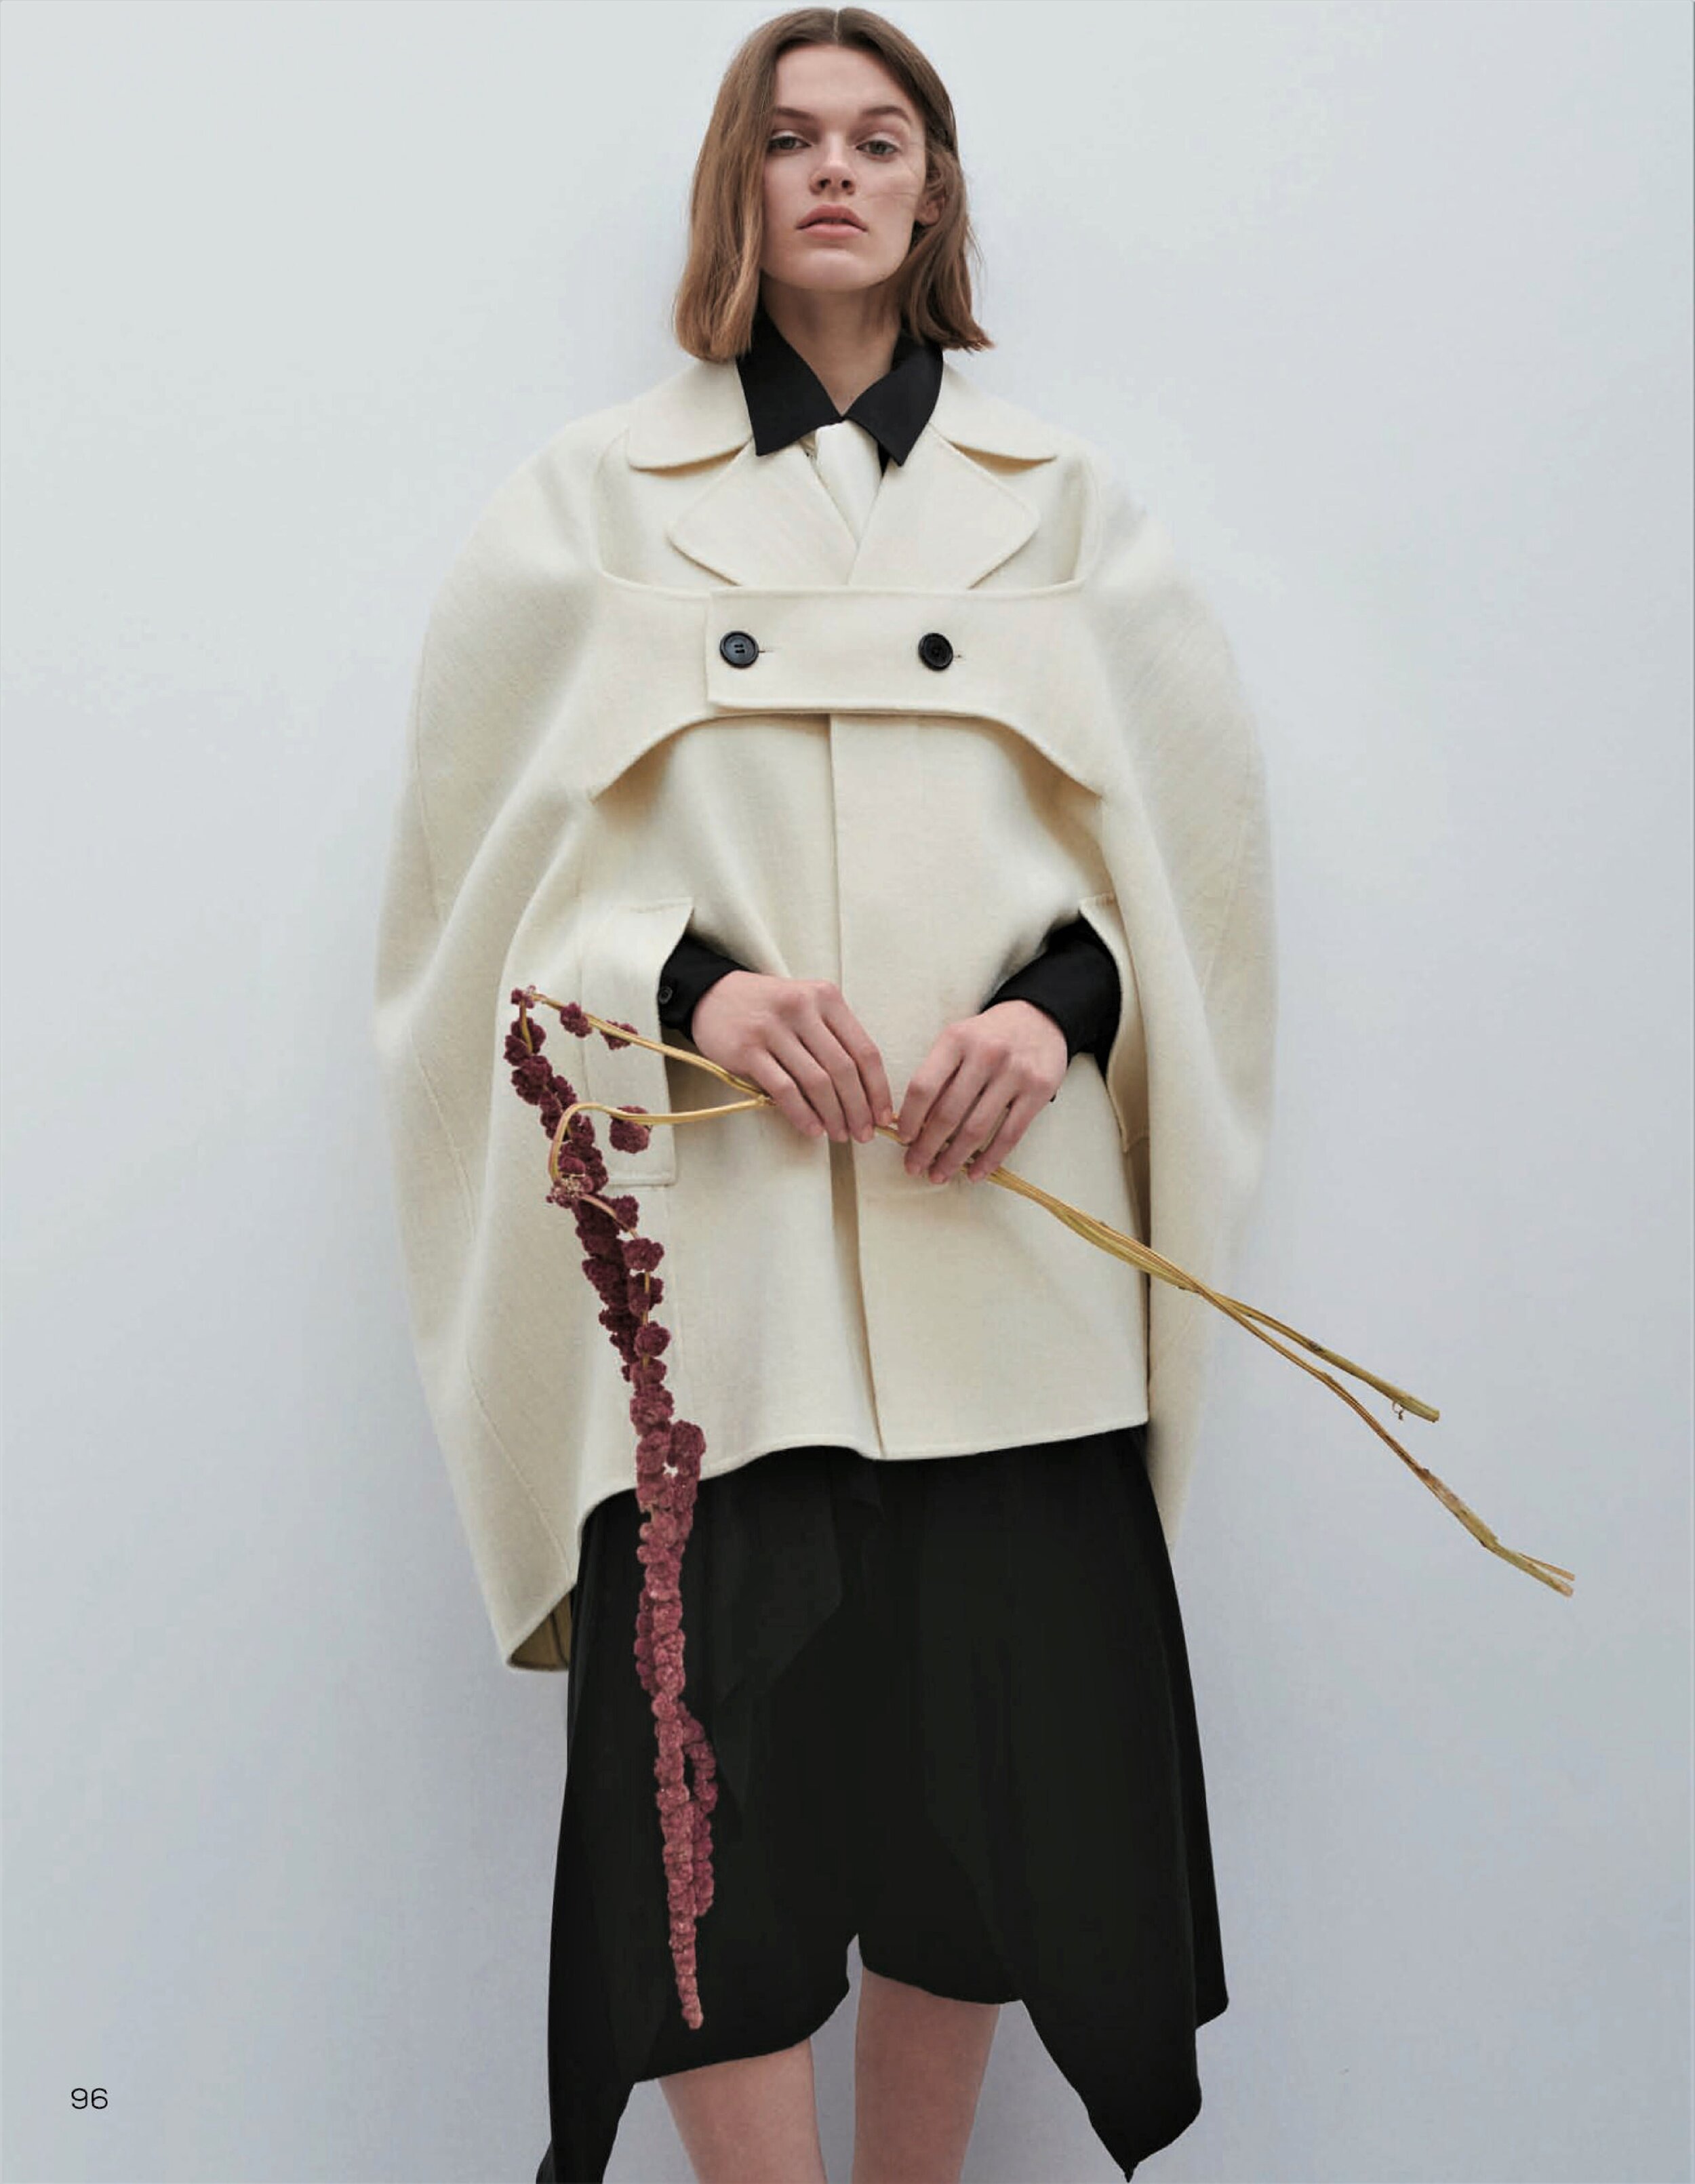 Cara Taylor by Thomas Slack to Vogue China Feb 2021 (3).jpg